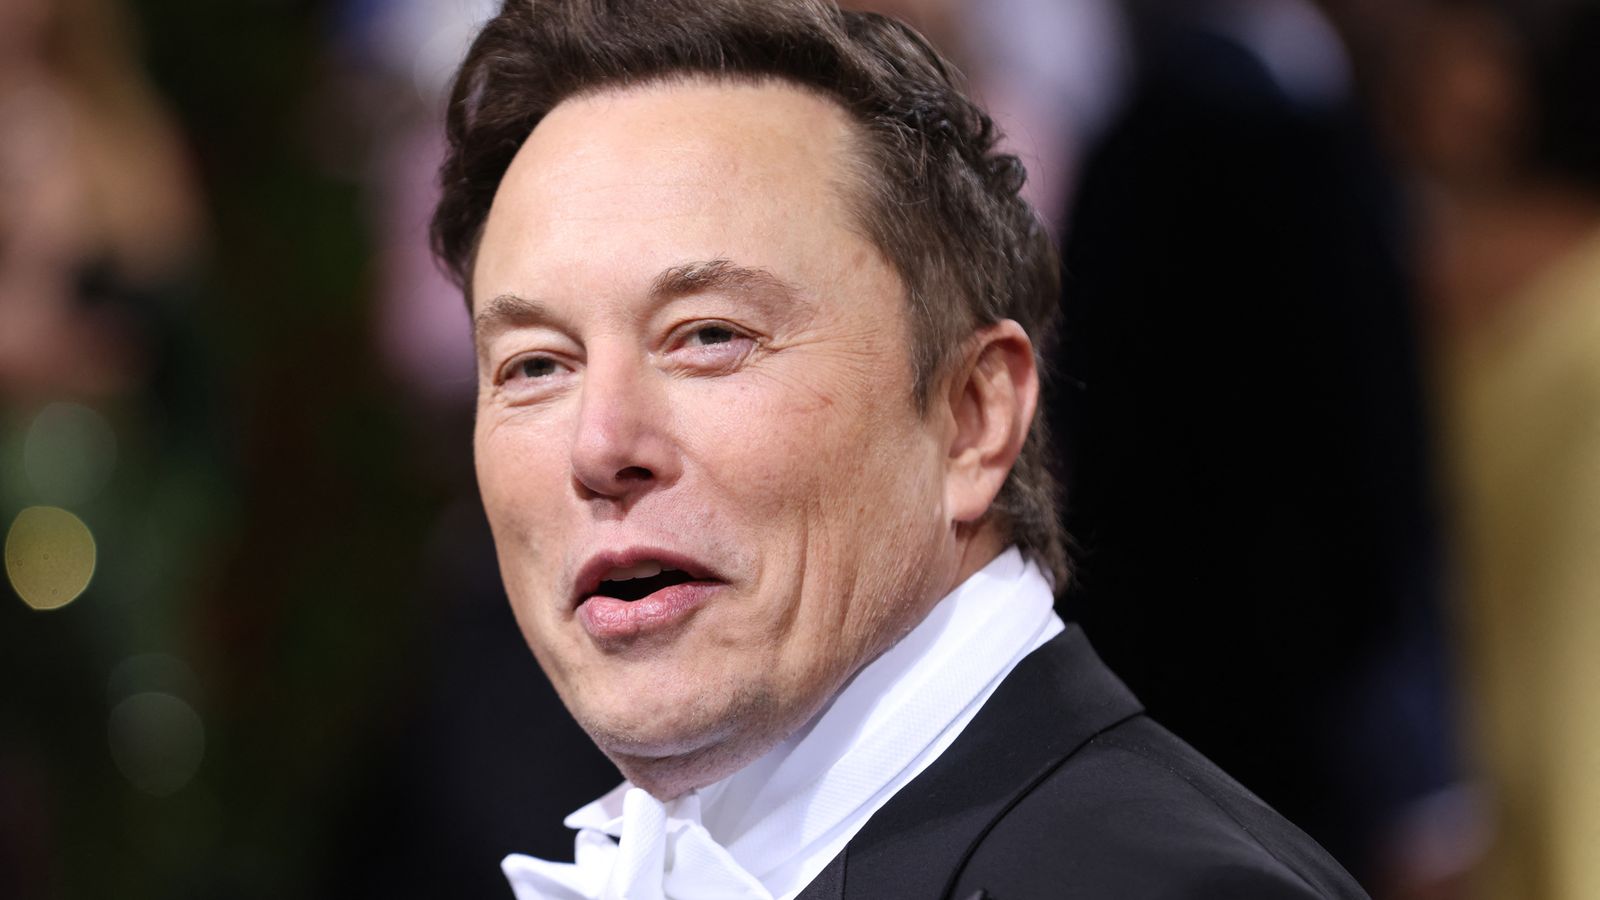 Elon Musk si scusa per aver paragonato George Soros a Magneto: 'È ingiusto per Magneto'